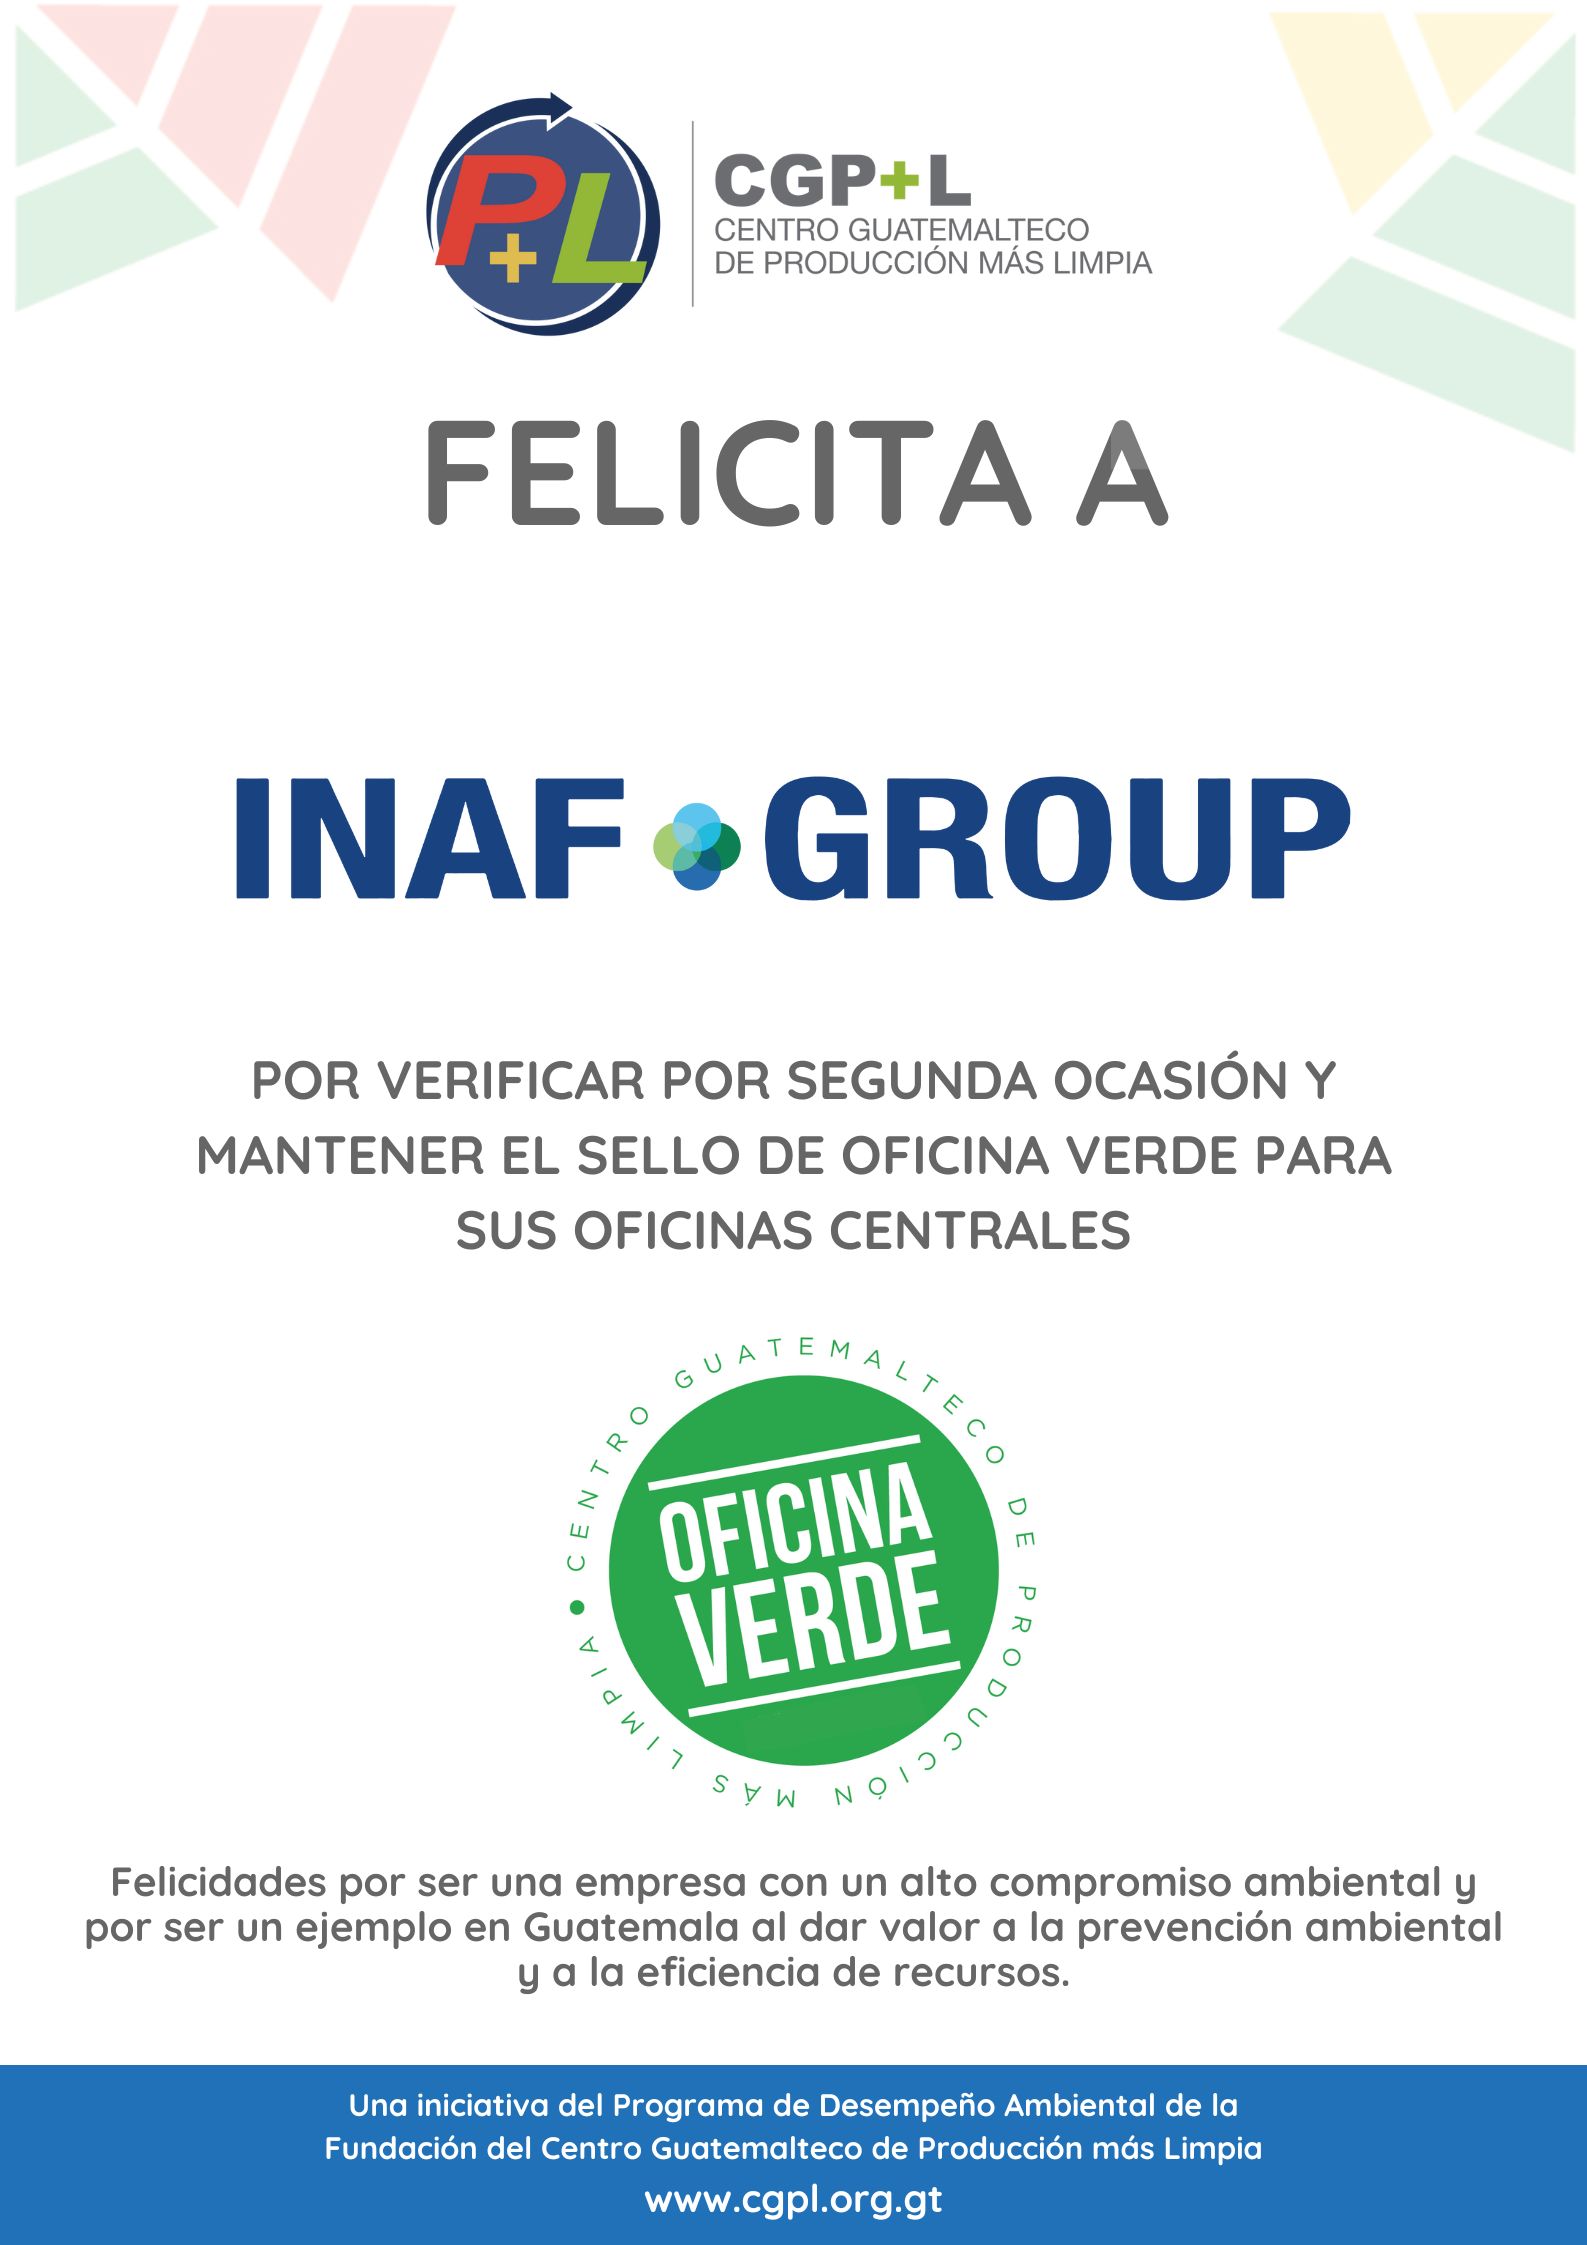 Felicidades A Inaf Group Por Mantener El Sello De Oficina Verde